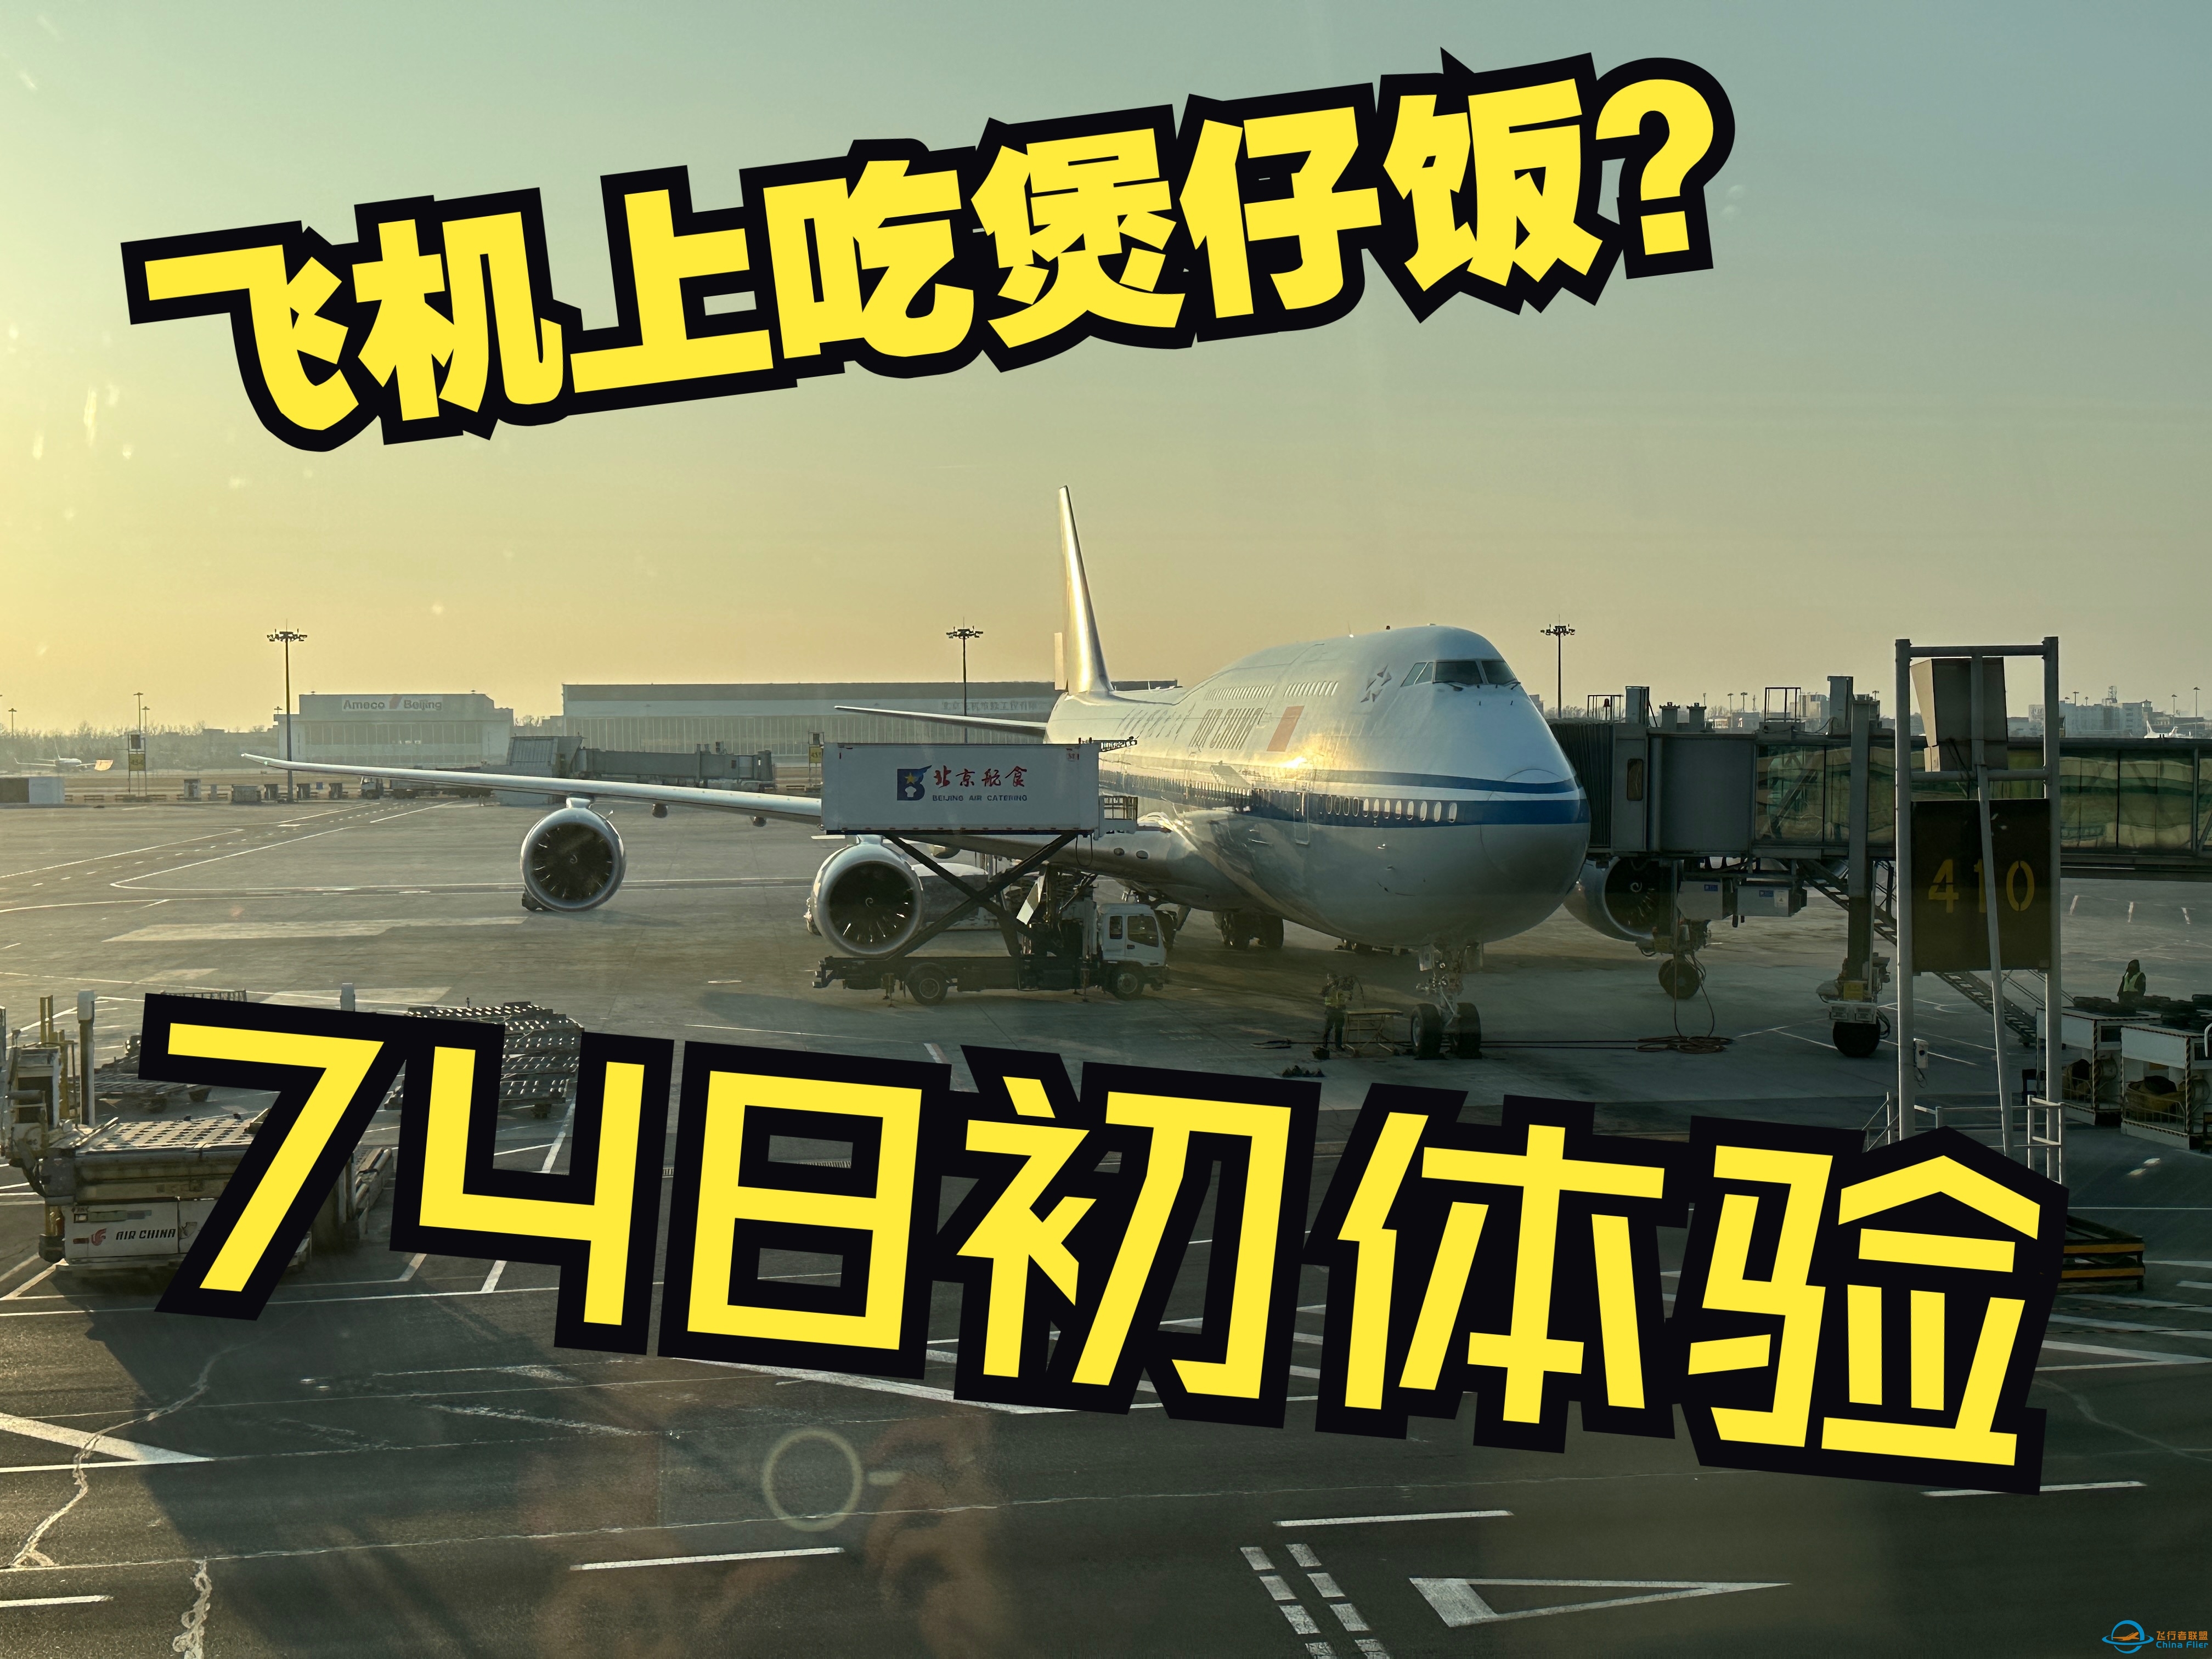 【飞行体验】从厦门回北京为什么要经过广州？当然是因为广州有748啦！-2703 